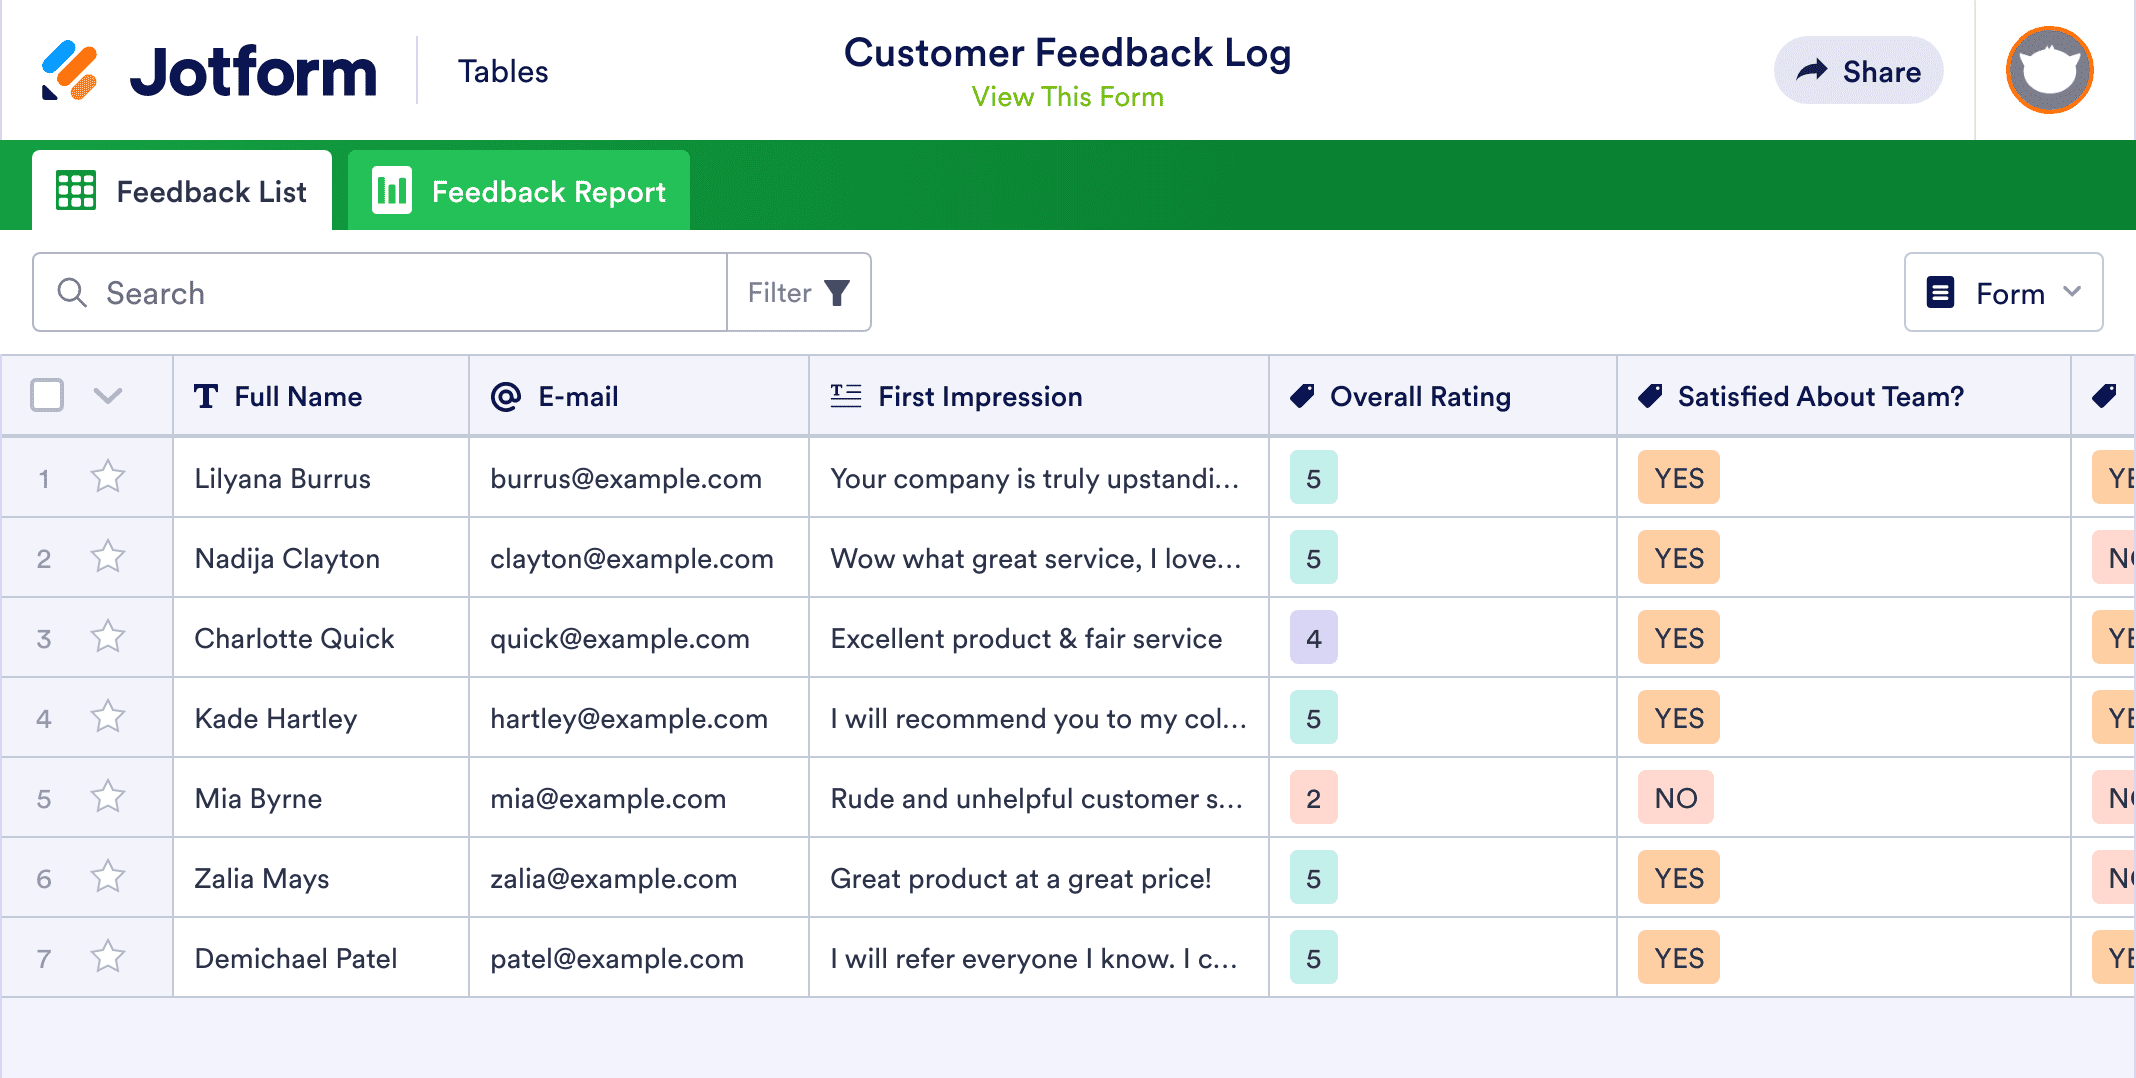 Customer Feedback Log